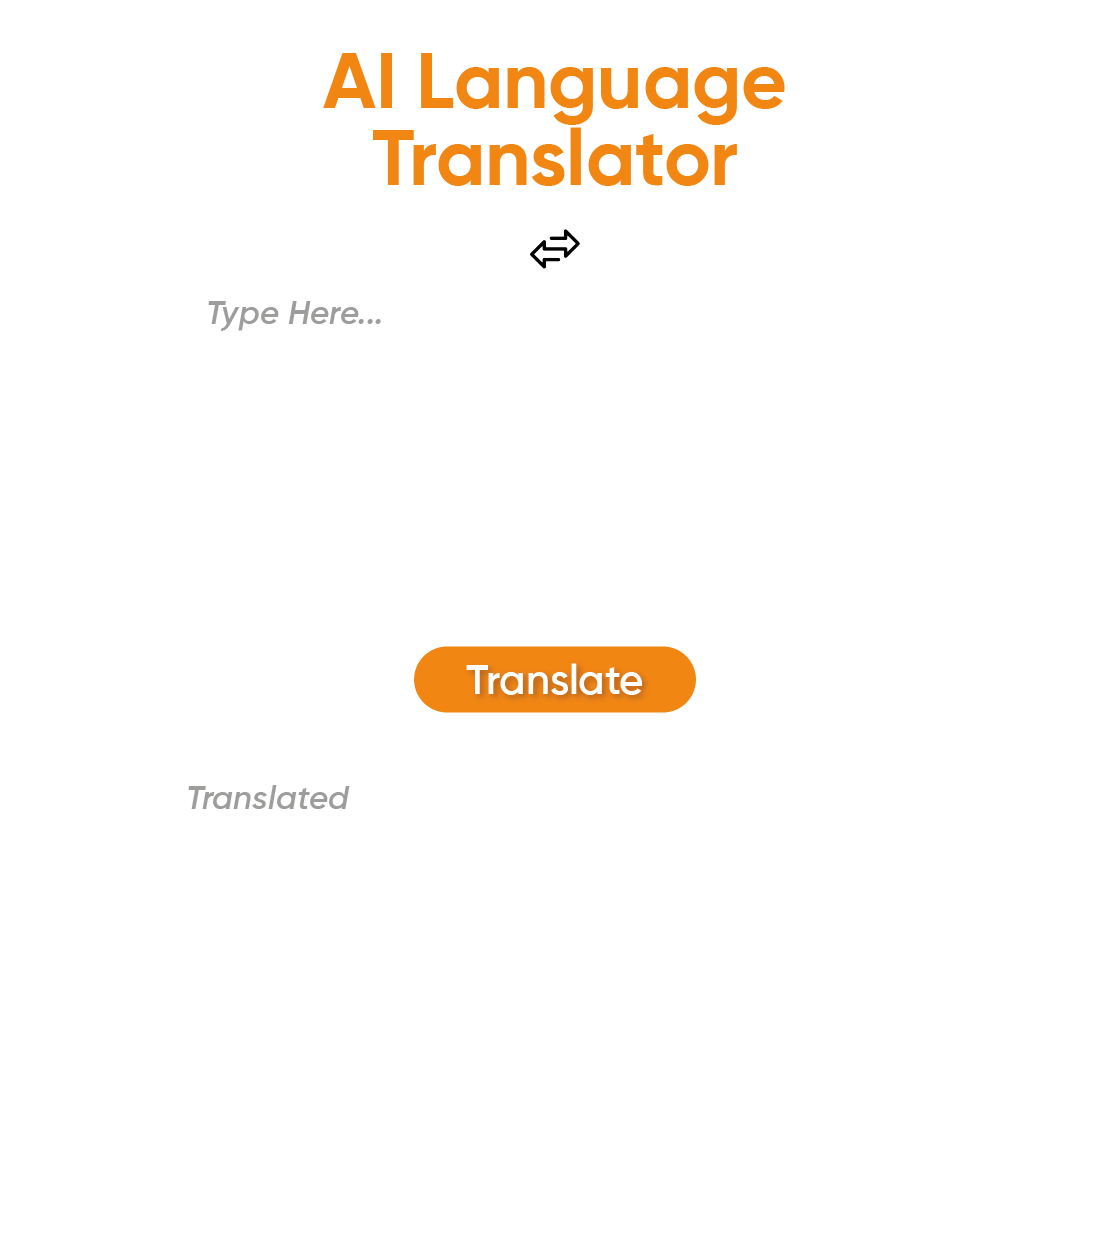 Why Use ETTVI's AI Translator?